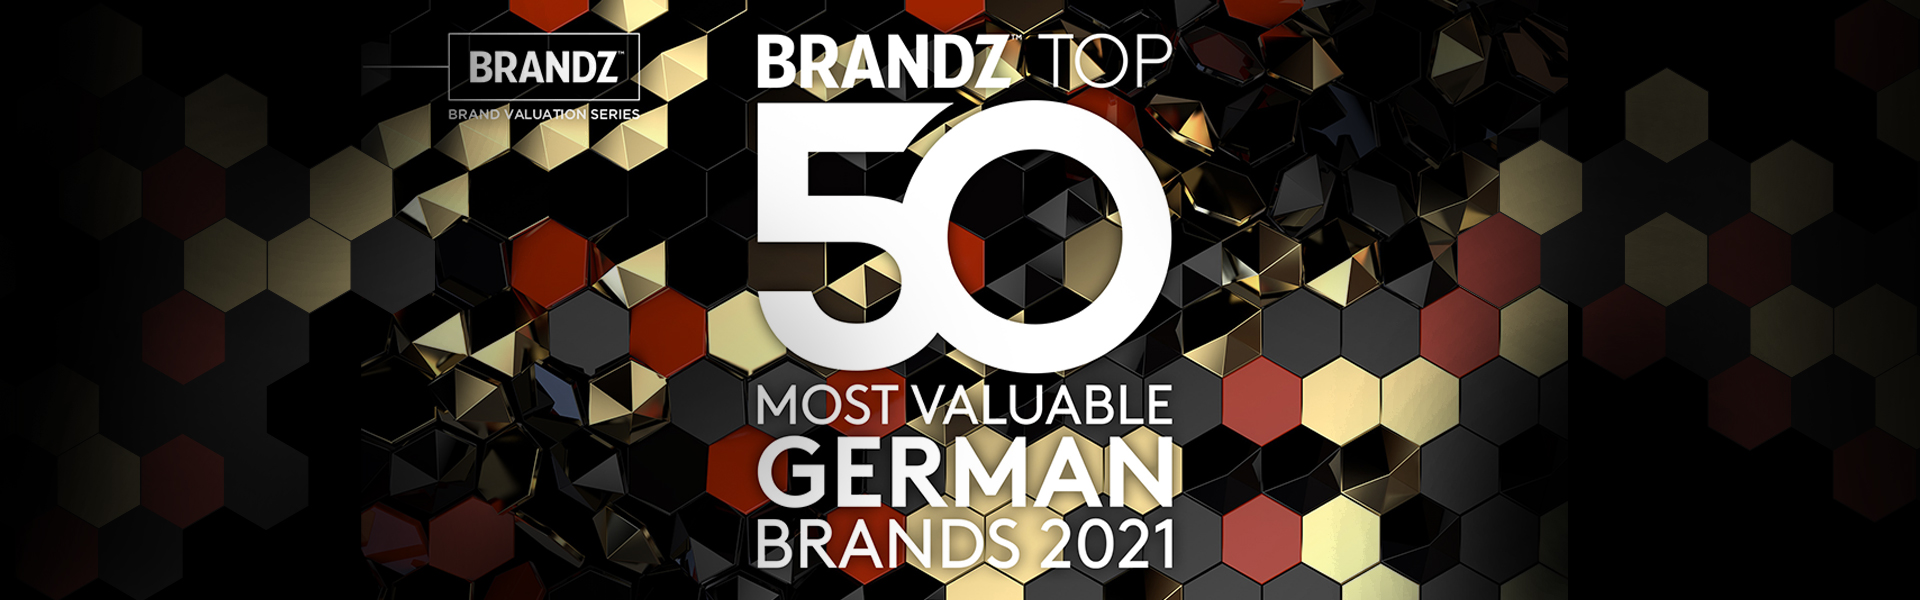 BrandZ Rankings 2021: 50 most valuable German brands